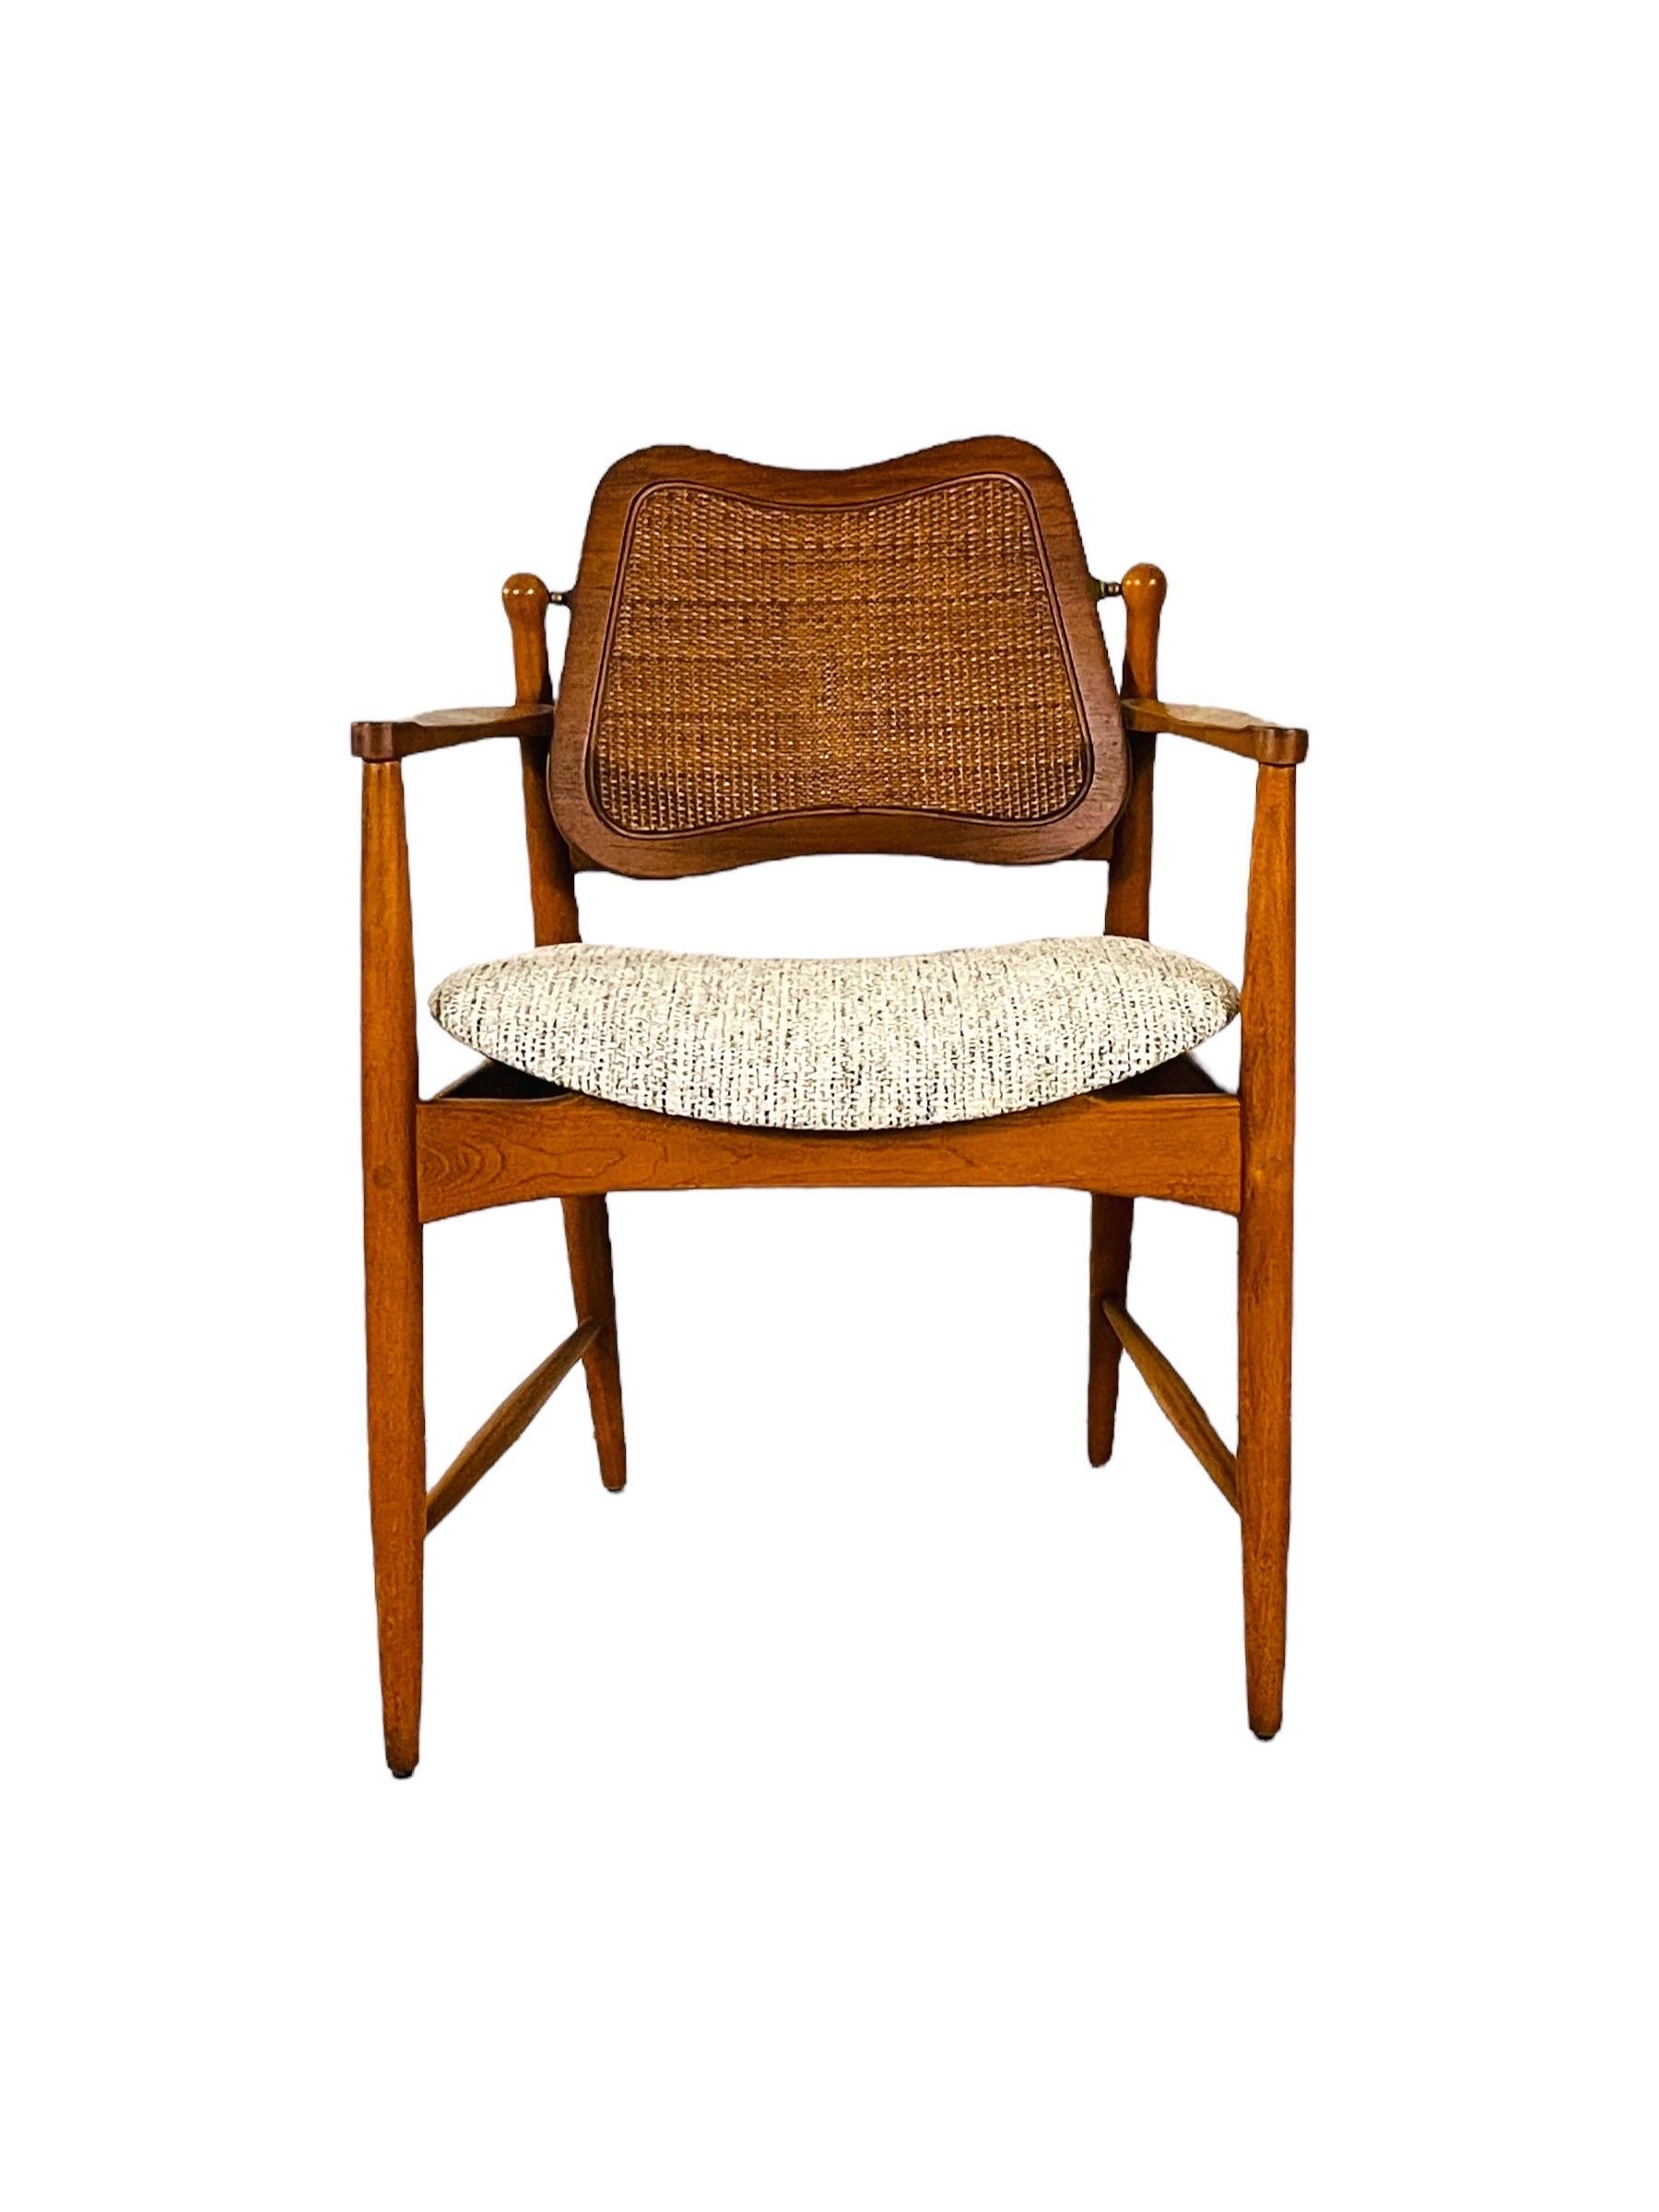 Rehaussez votre espace avec cette paire de fauteuils FD-186 d'Arne Vodder pour France & Son, une marque d'excellence du design danois. Ces chaises présentent l'élégante simplicité et le fonctionnalisme qui caractérisent le mobilier danois moderne du